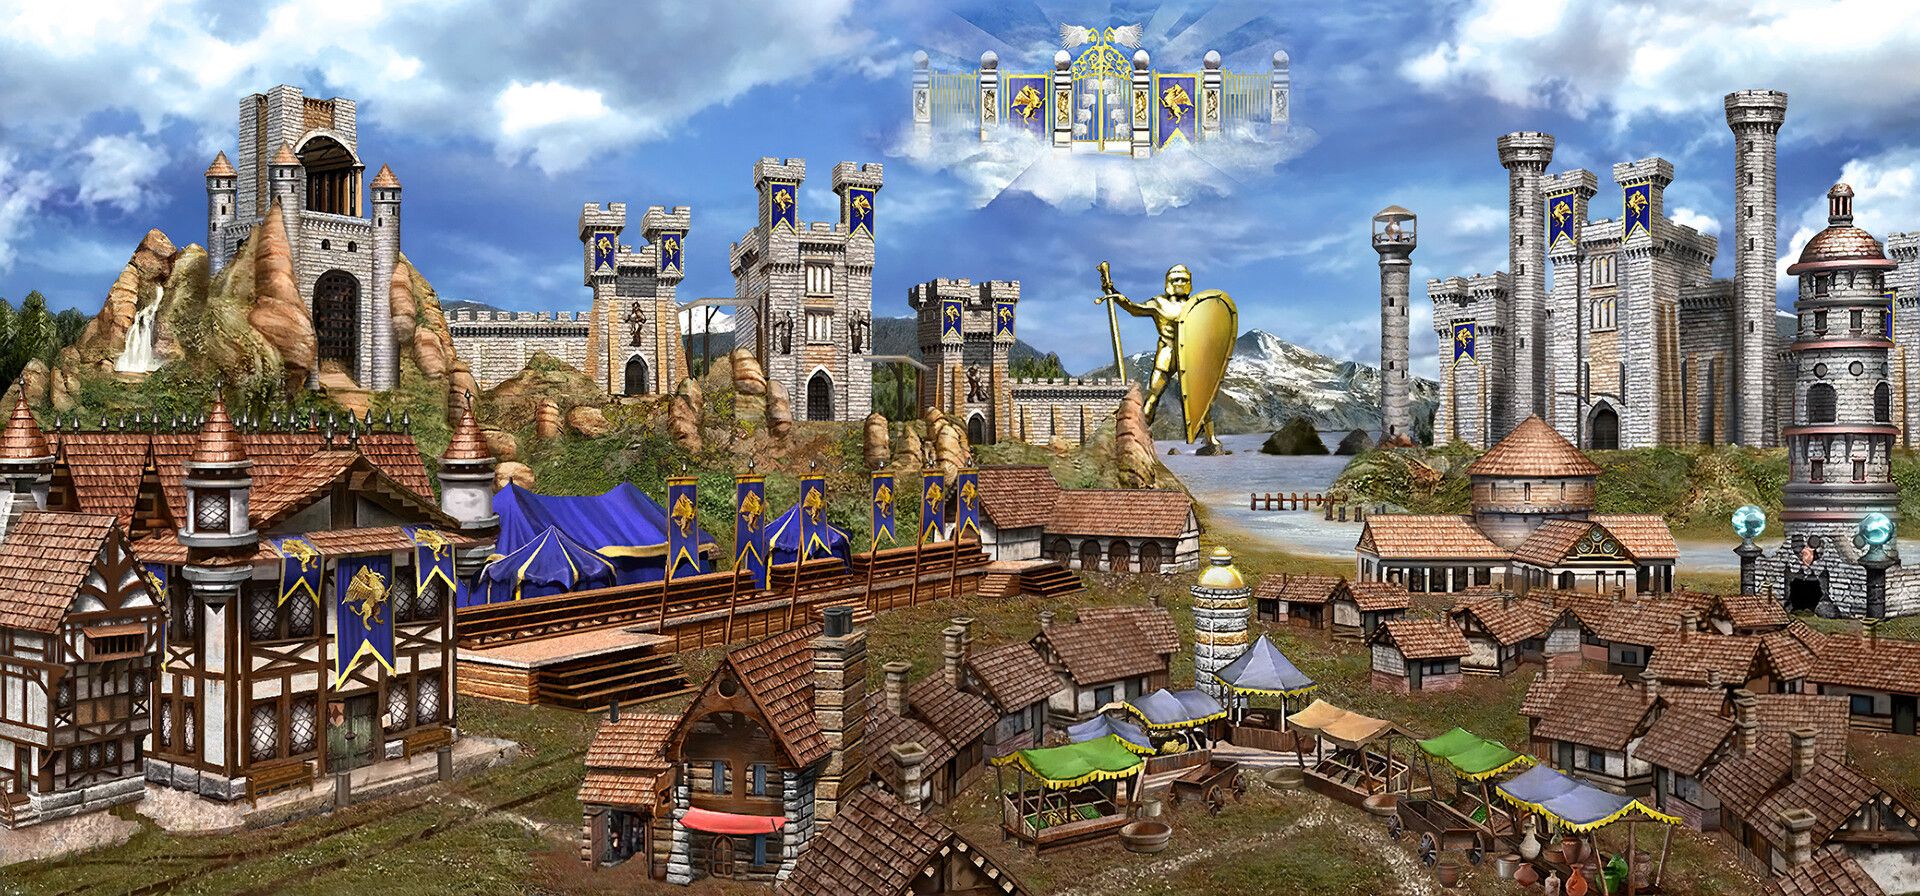 Замок из «Героев 3» на Unreal Engine. Автор: Hurricane. Источник: ArtStation